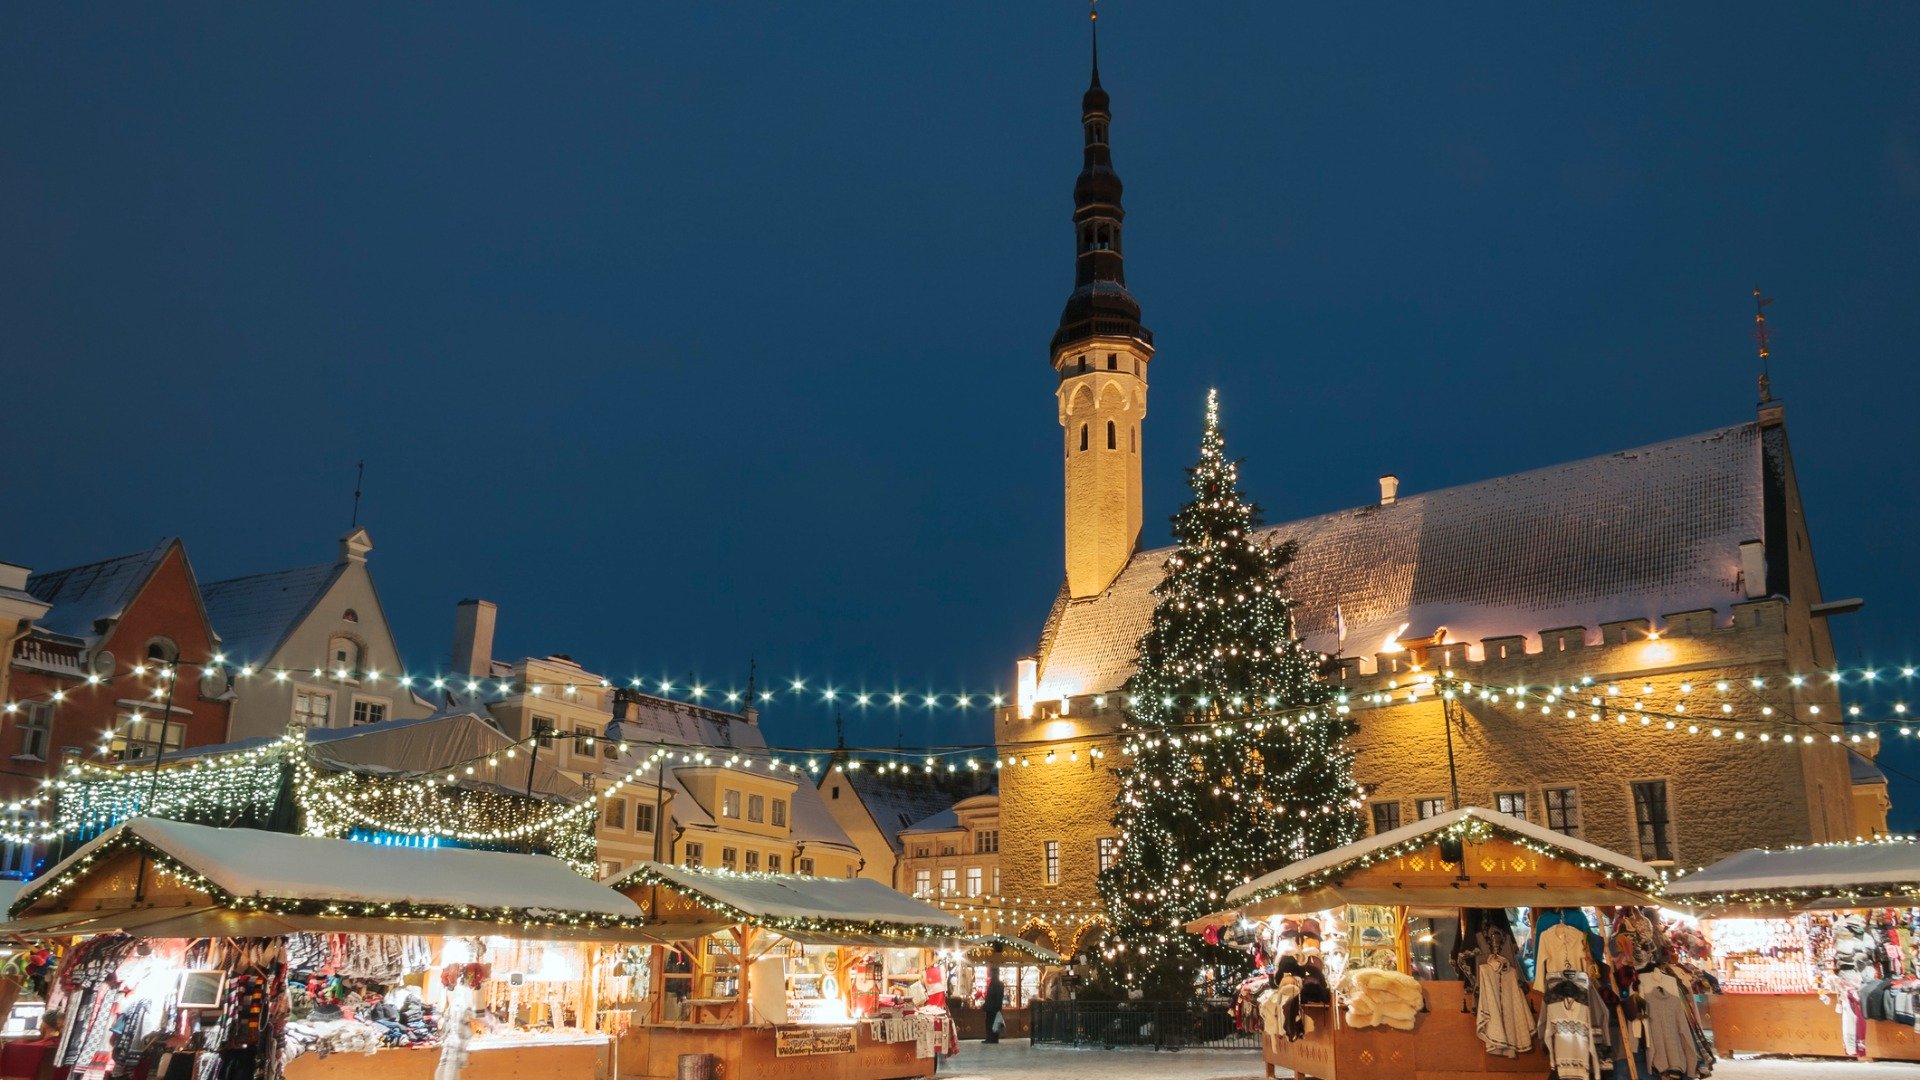 Această imagine prezintă piața de Crăciun din Tallinn. Există lumini de Crăciun și oamenii se opresc la tarabele care vând suveniruri. 